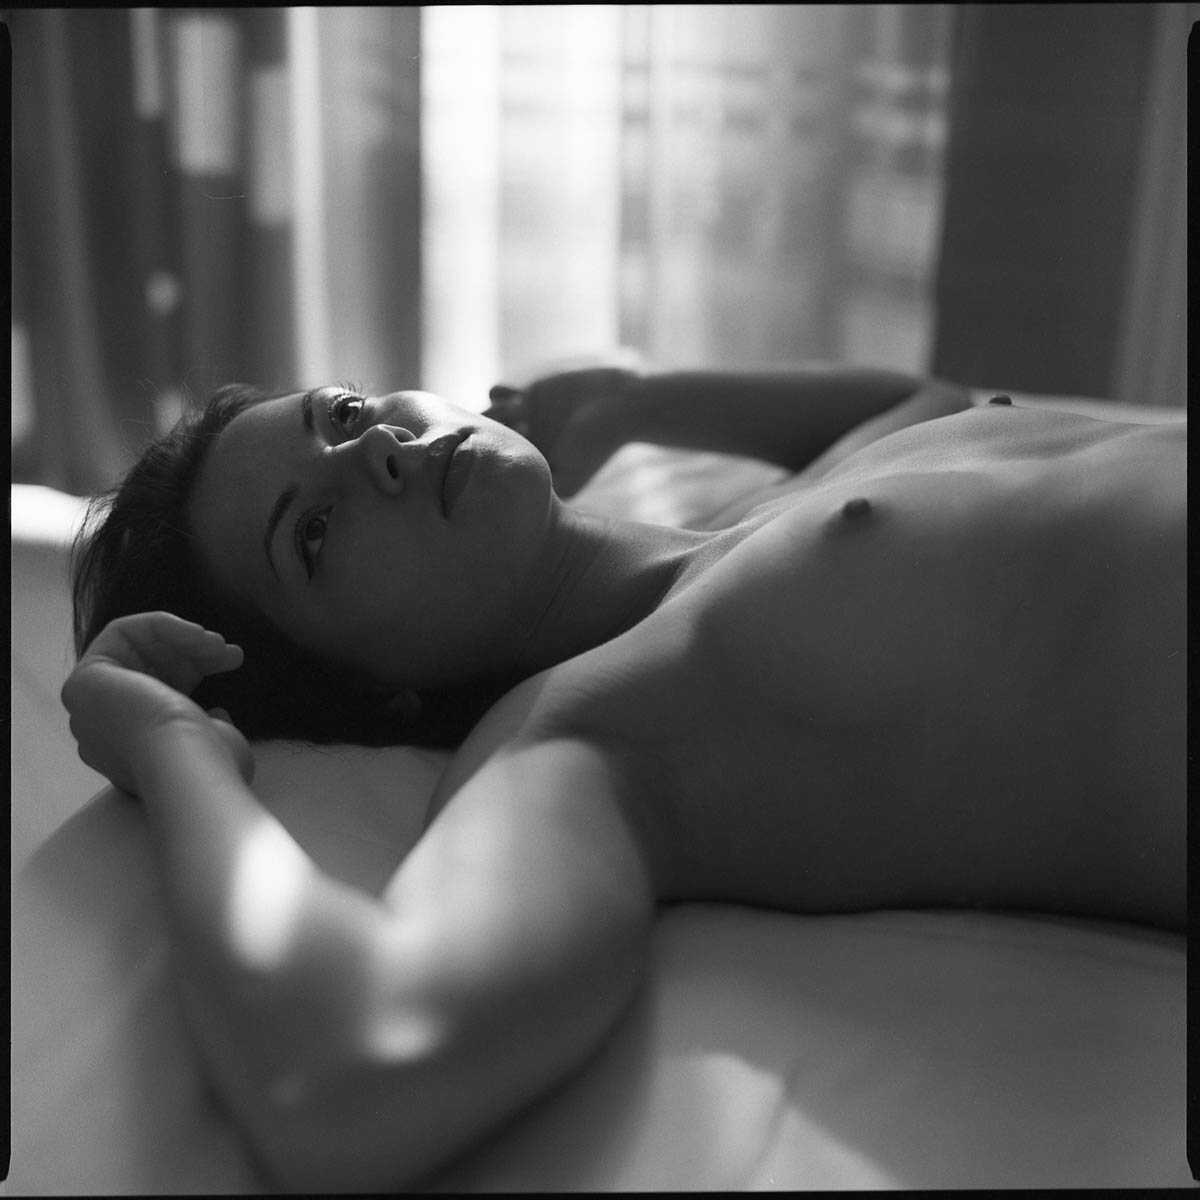 Η μουνάρα μοντέλο Sophie la Sage είναι κάβλα σε γυμνές φωτογραφίες